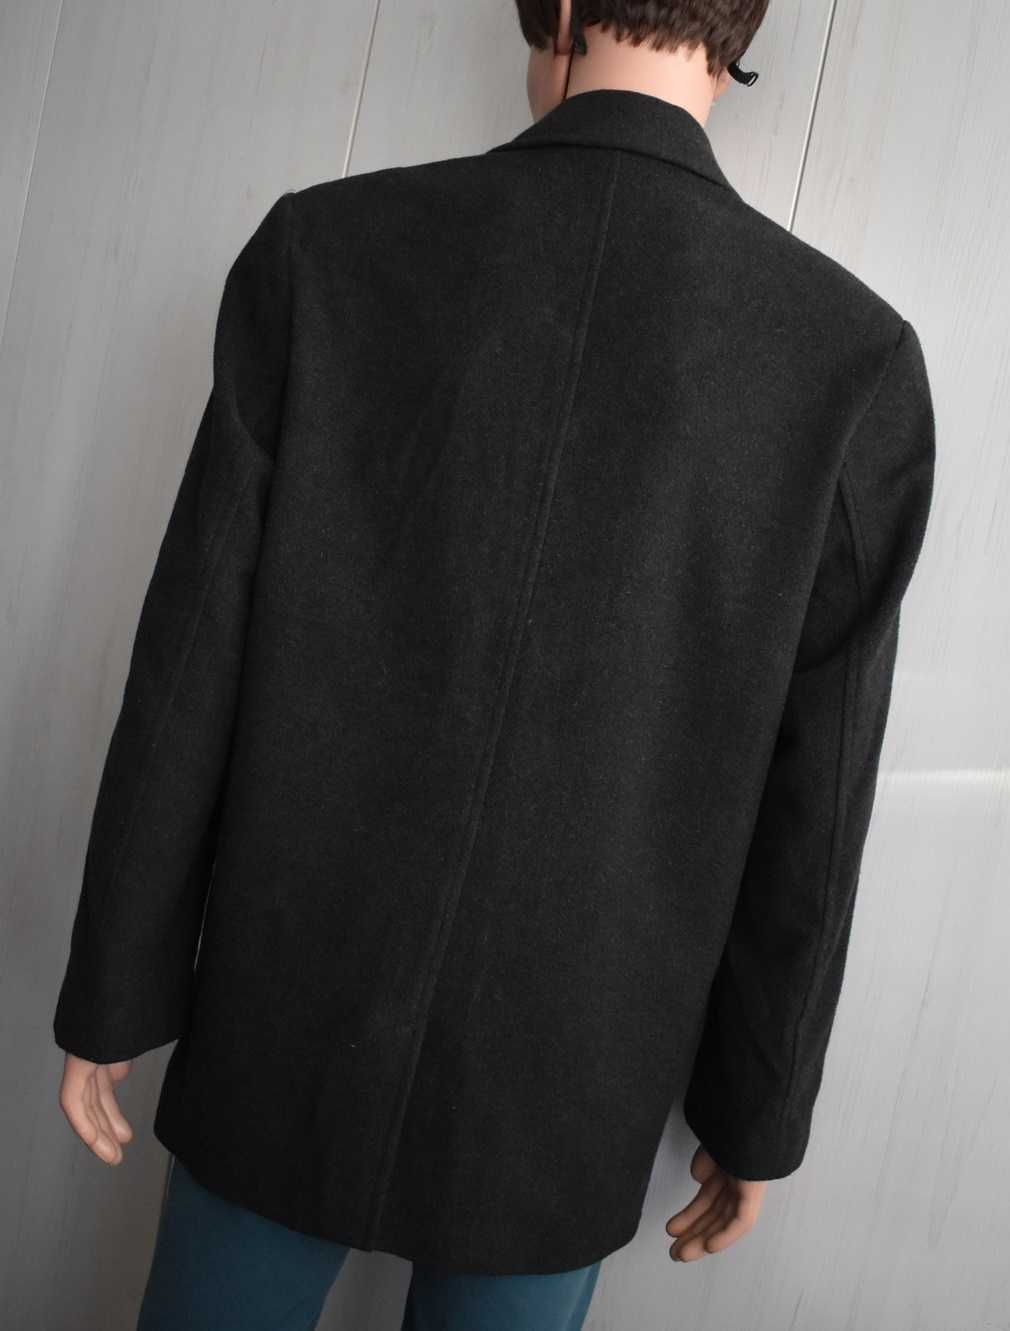 Płaszcz wełniany M zimowy elegancki jesionka kurtka wełniana dyplomatk